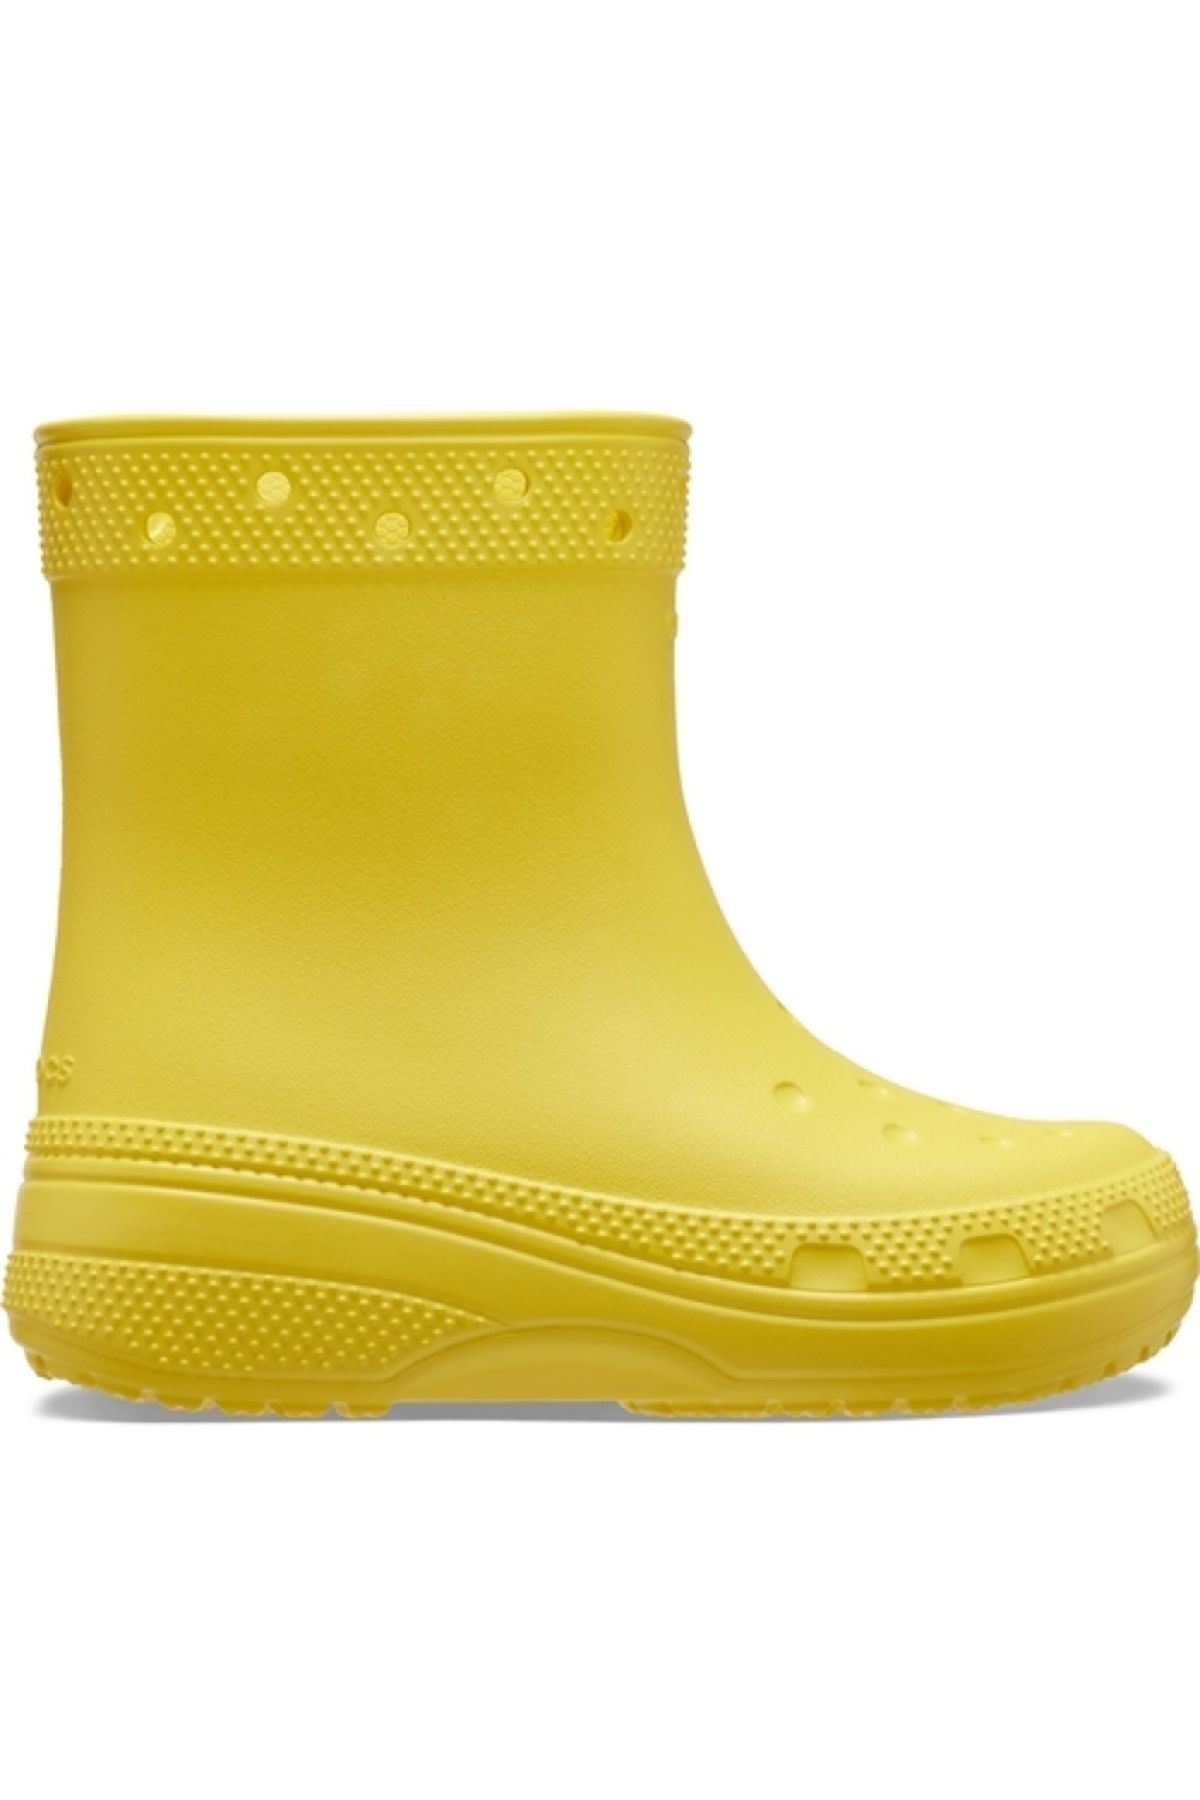 Crocs Classic Boot K Navy Çocuk Yağmur Botu 208544-75Y Sarı